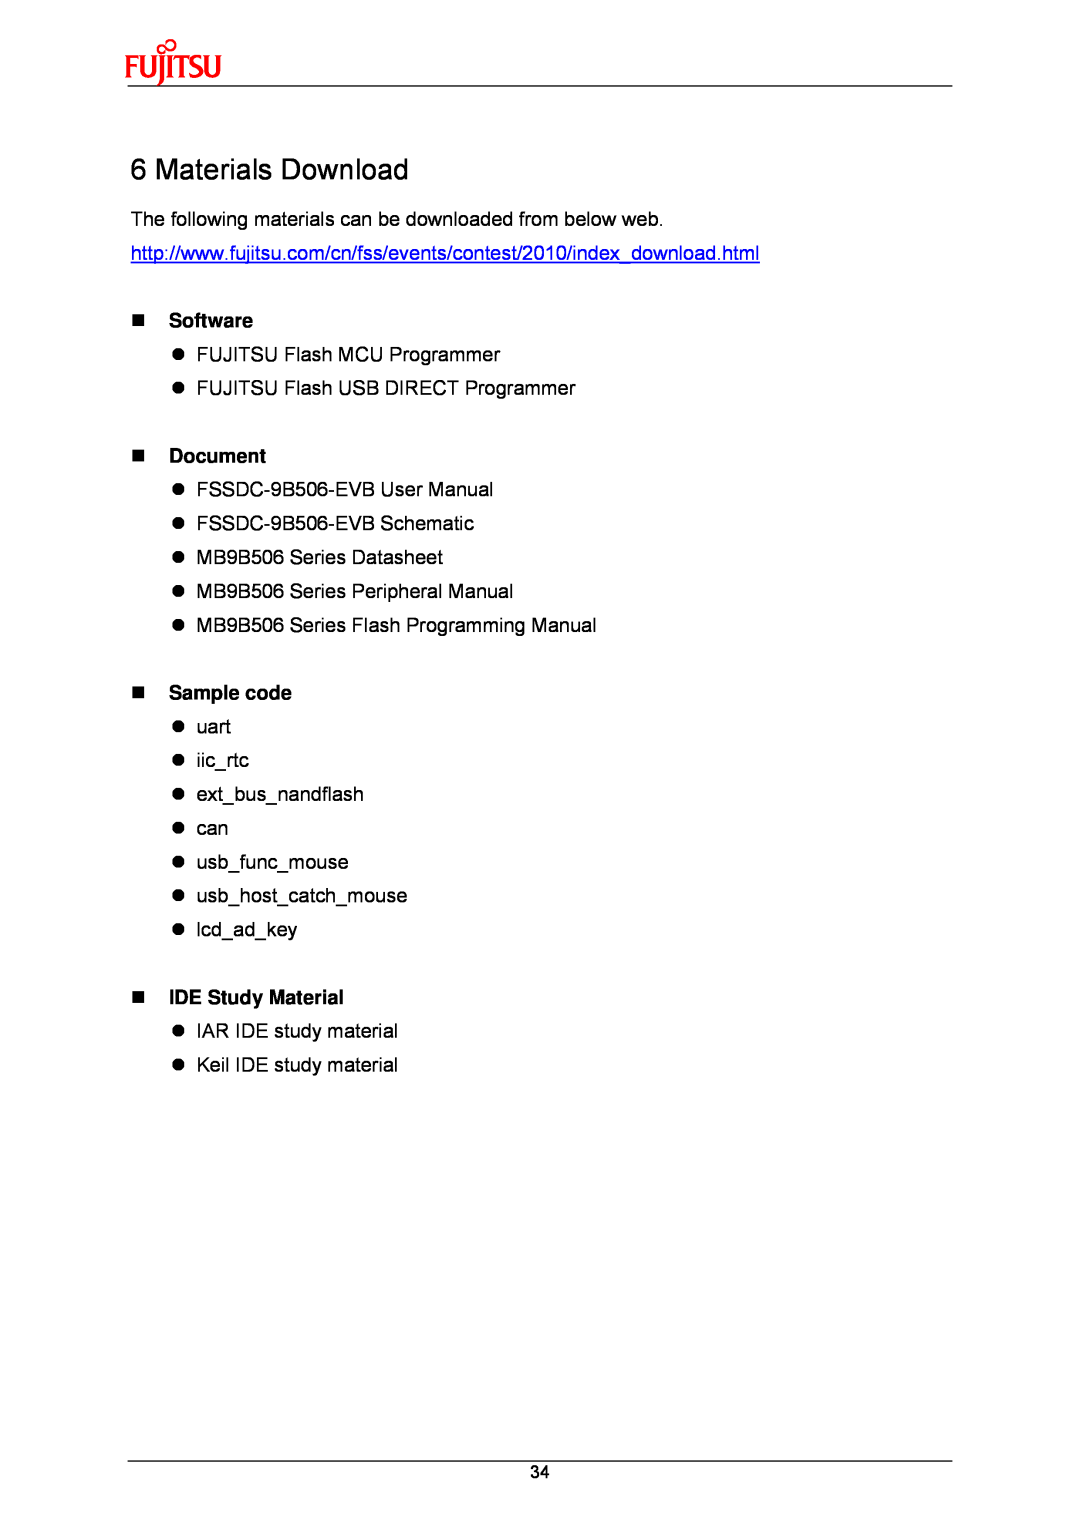 Fujitsu MB9B500 Series user manual Materials Download, „ Software, „ Document, „ Sample code, „ IDE Study Material 